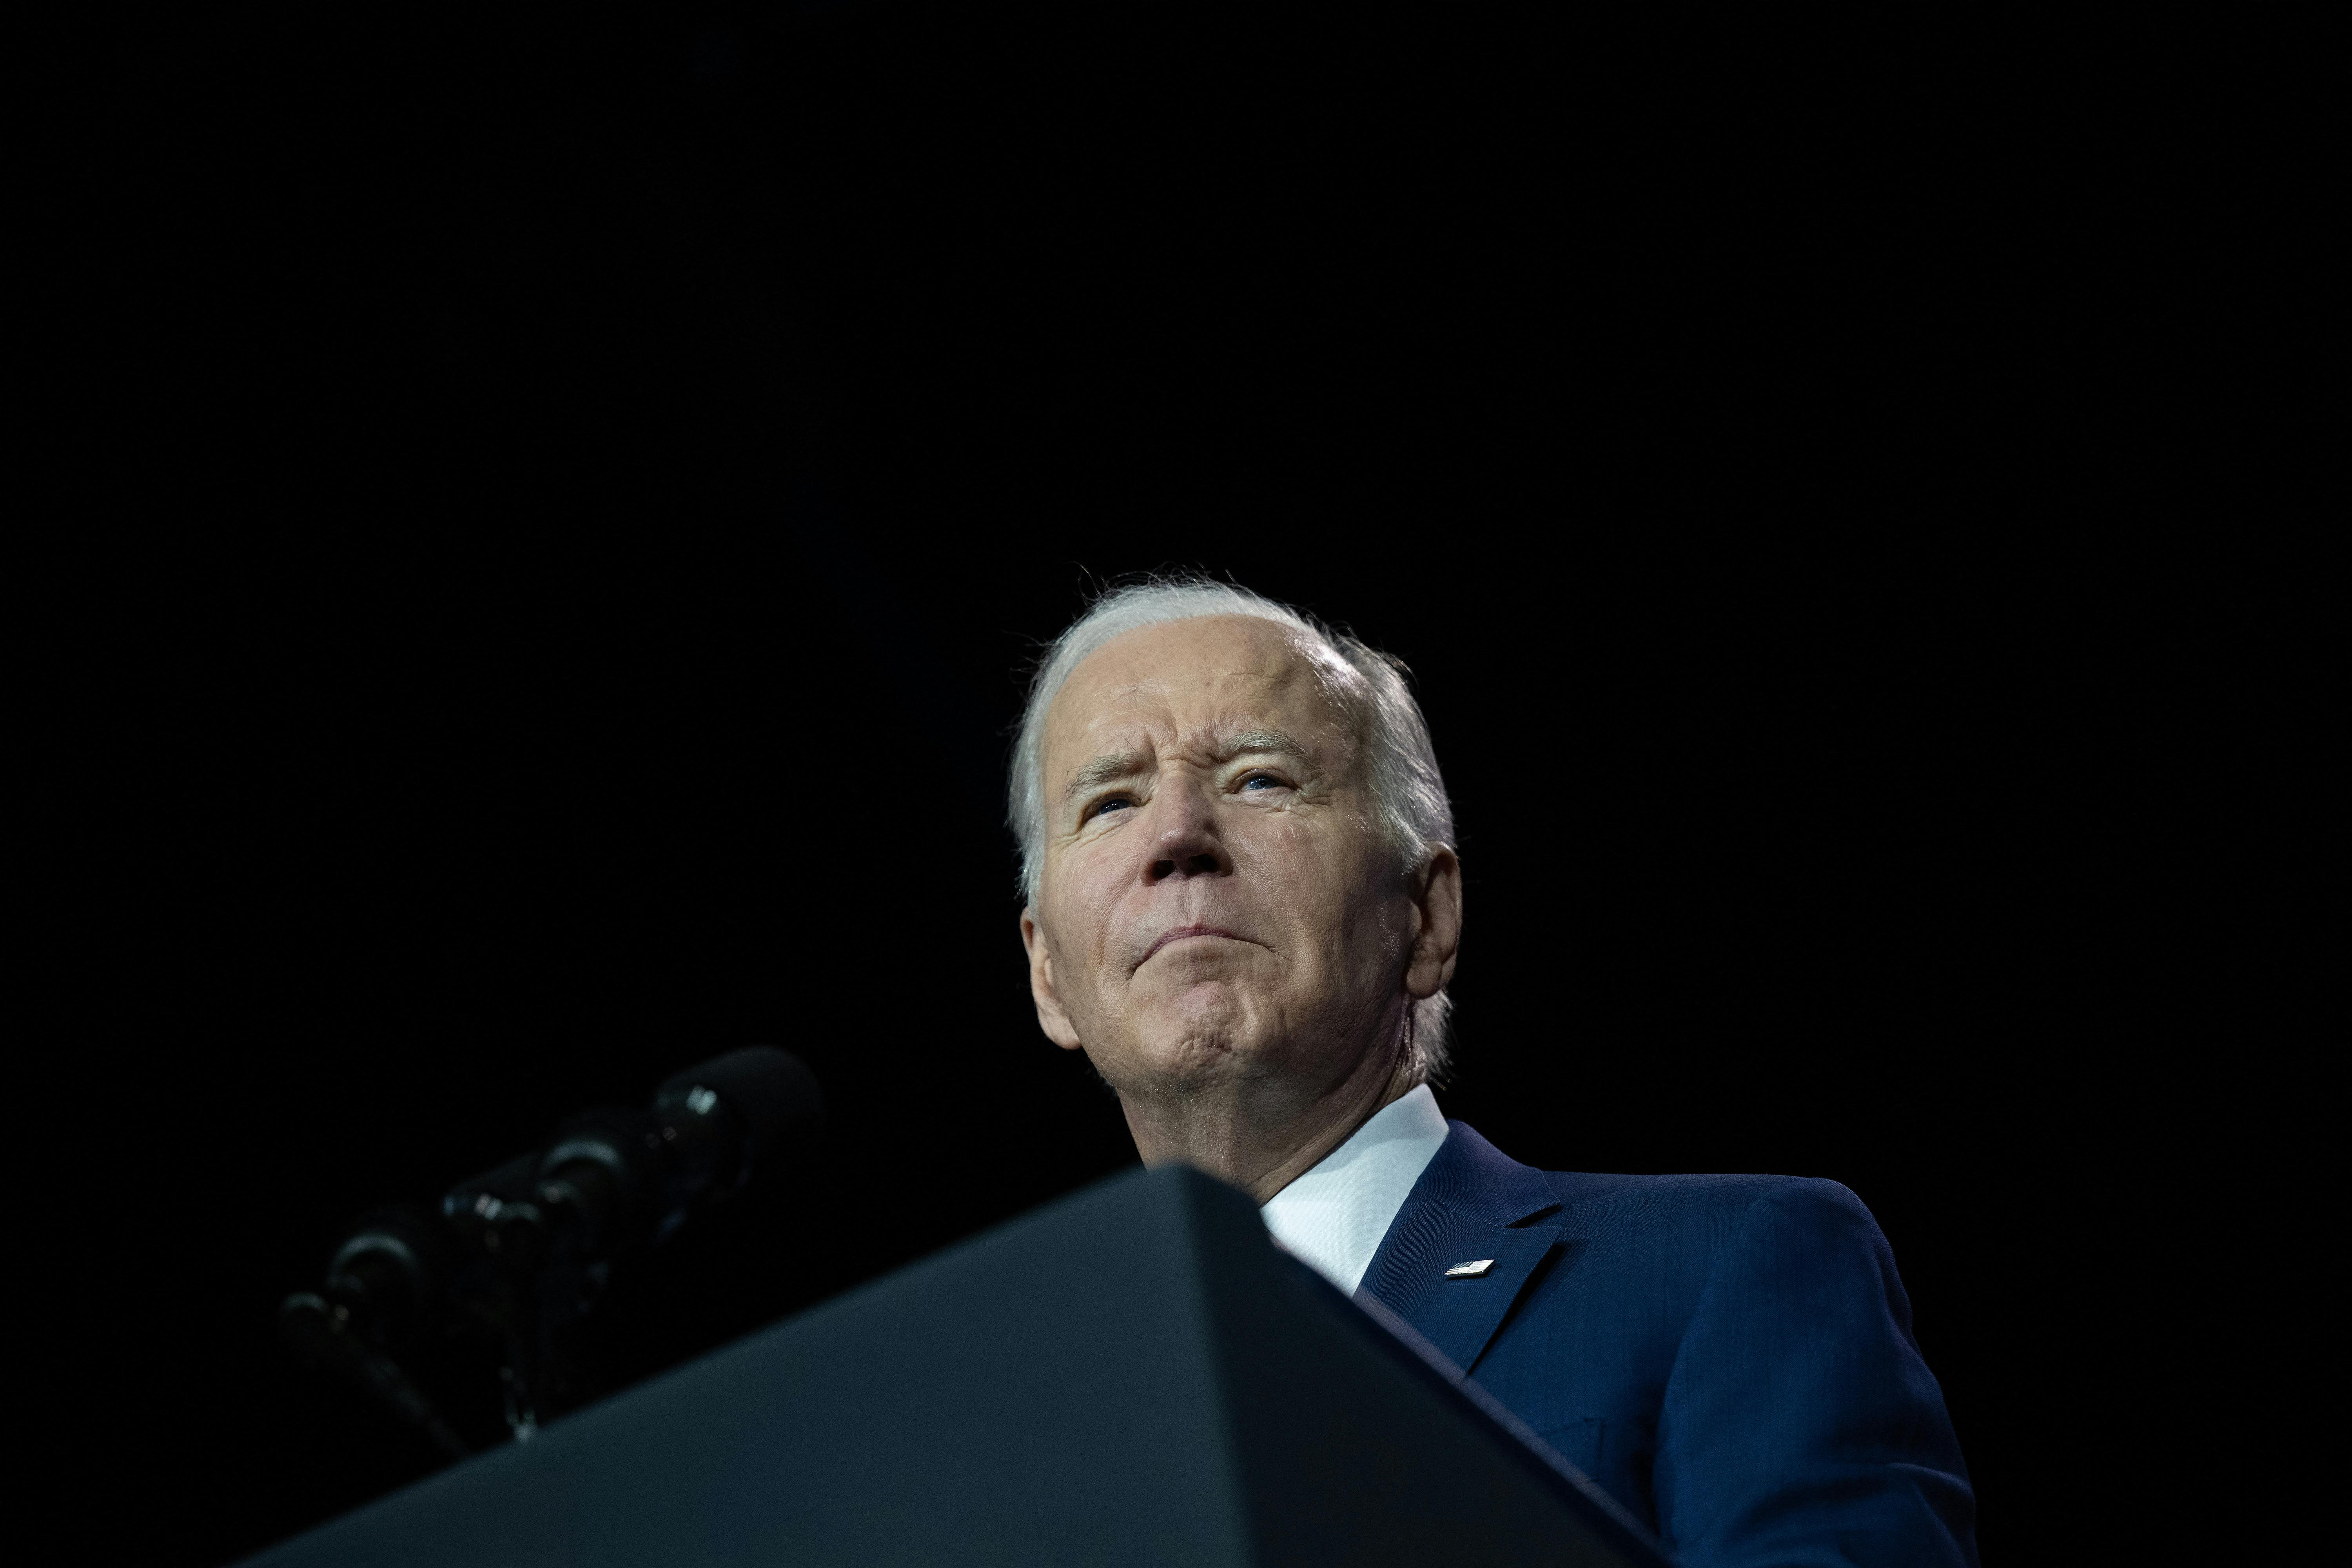 Joe Biden Has to Walk a Fine Line When Fighting Disinformation